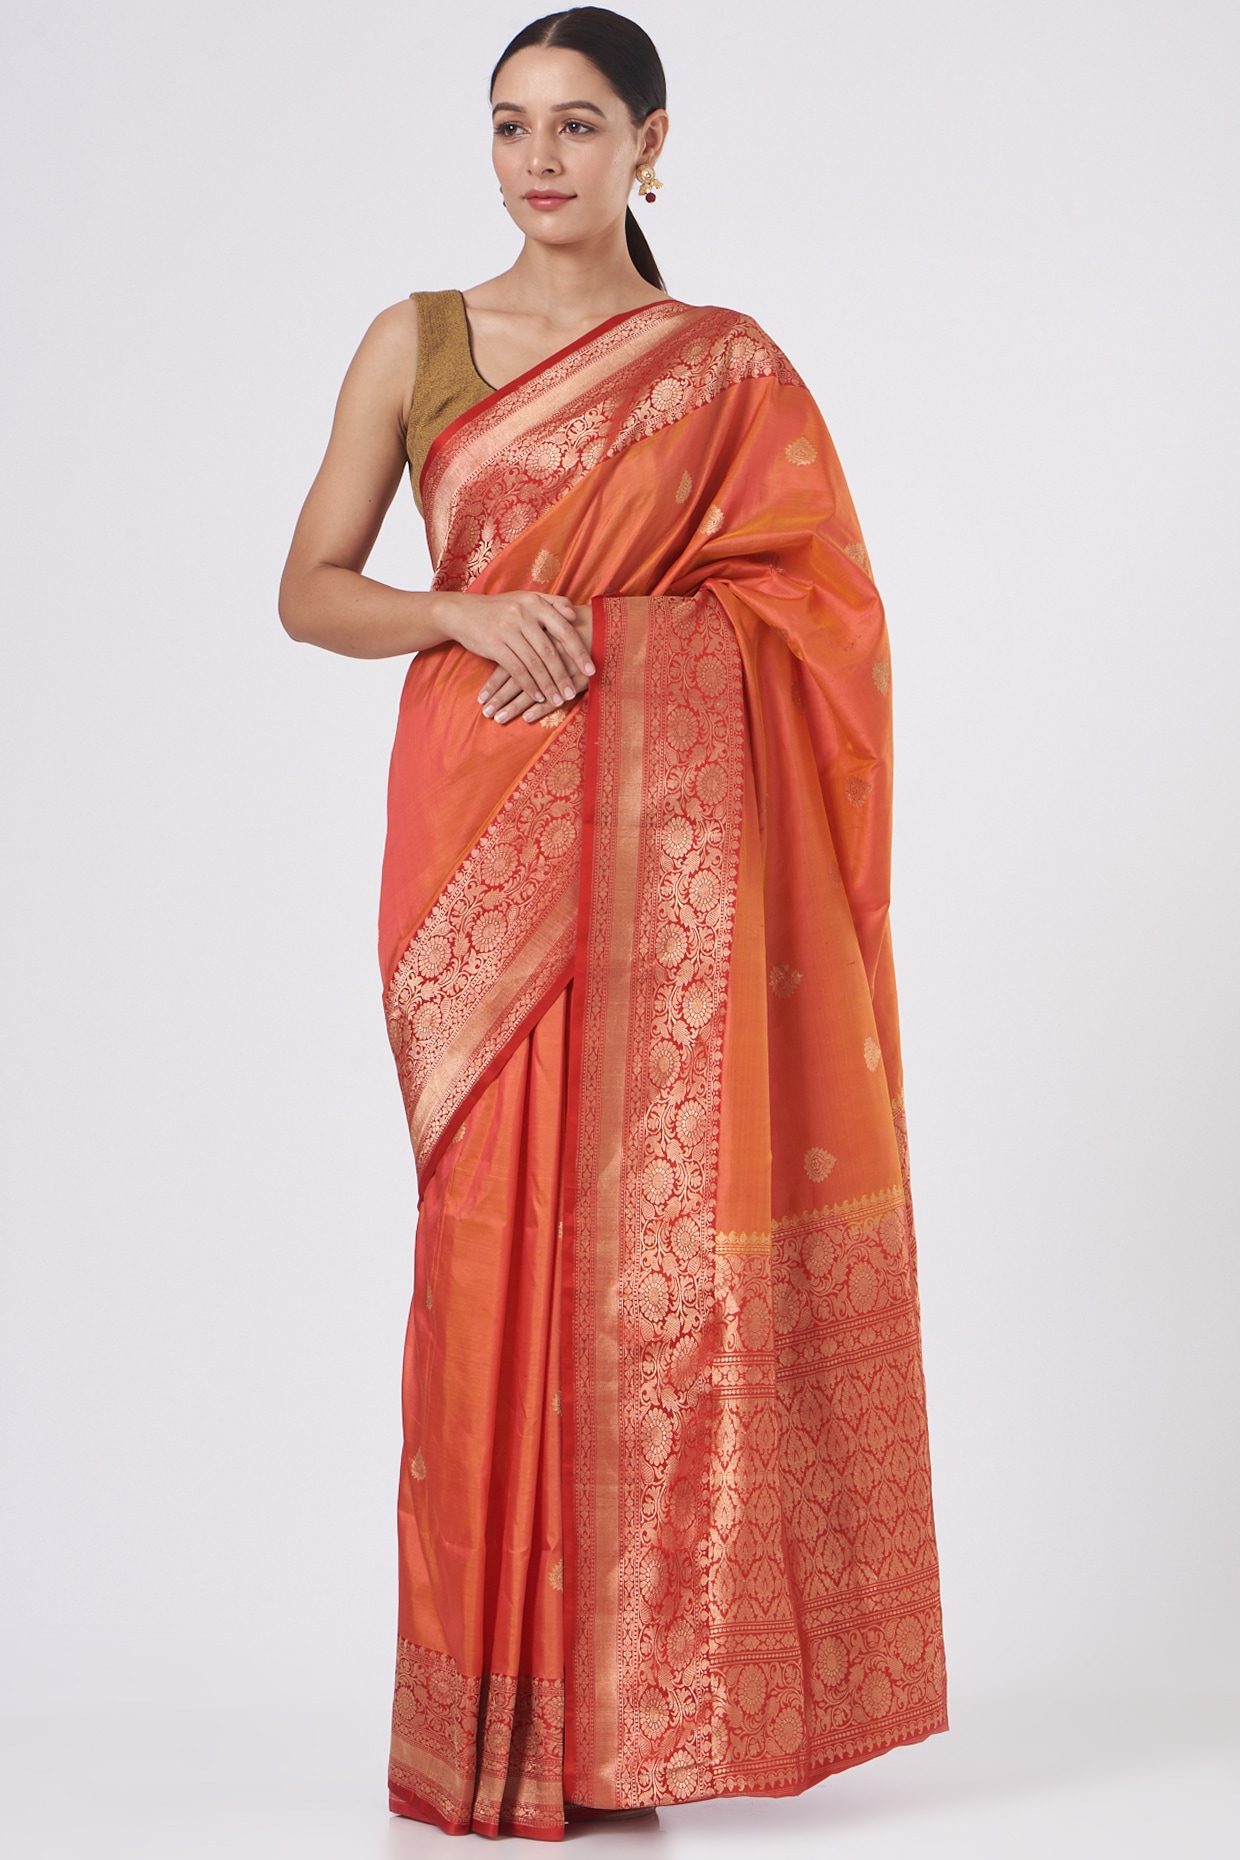 Radiance of Zari: The Exquisite Double Zari Orange Banarasi Silk Saree – YNF